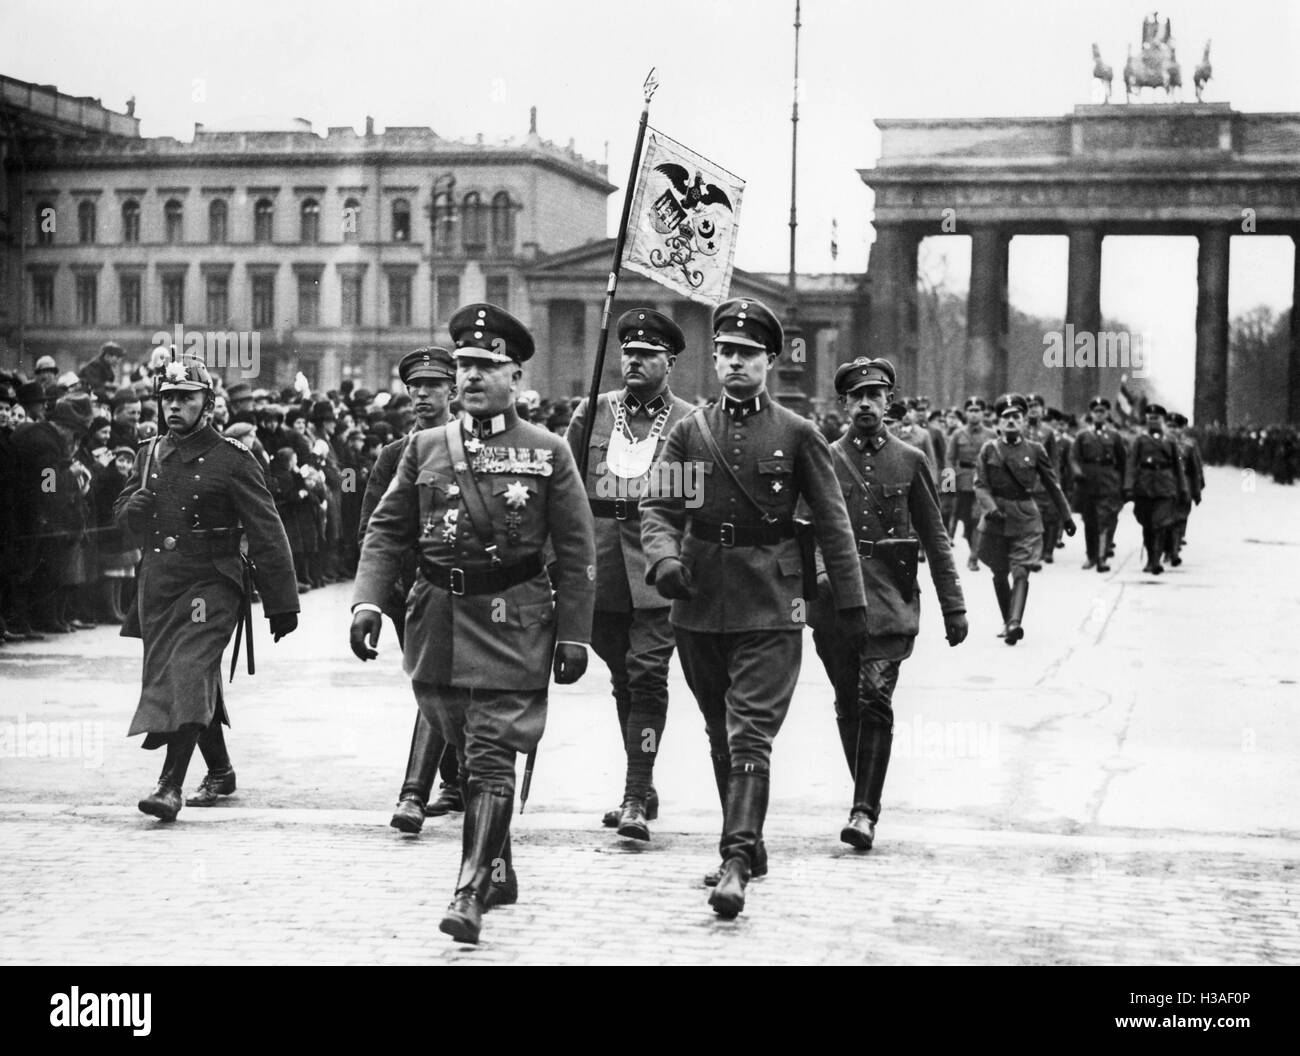 Theodor Duesterberg bei der Stahlhelm-Parade am Brandenburger Tor in Berlin, 1933 Stockfoto